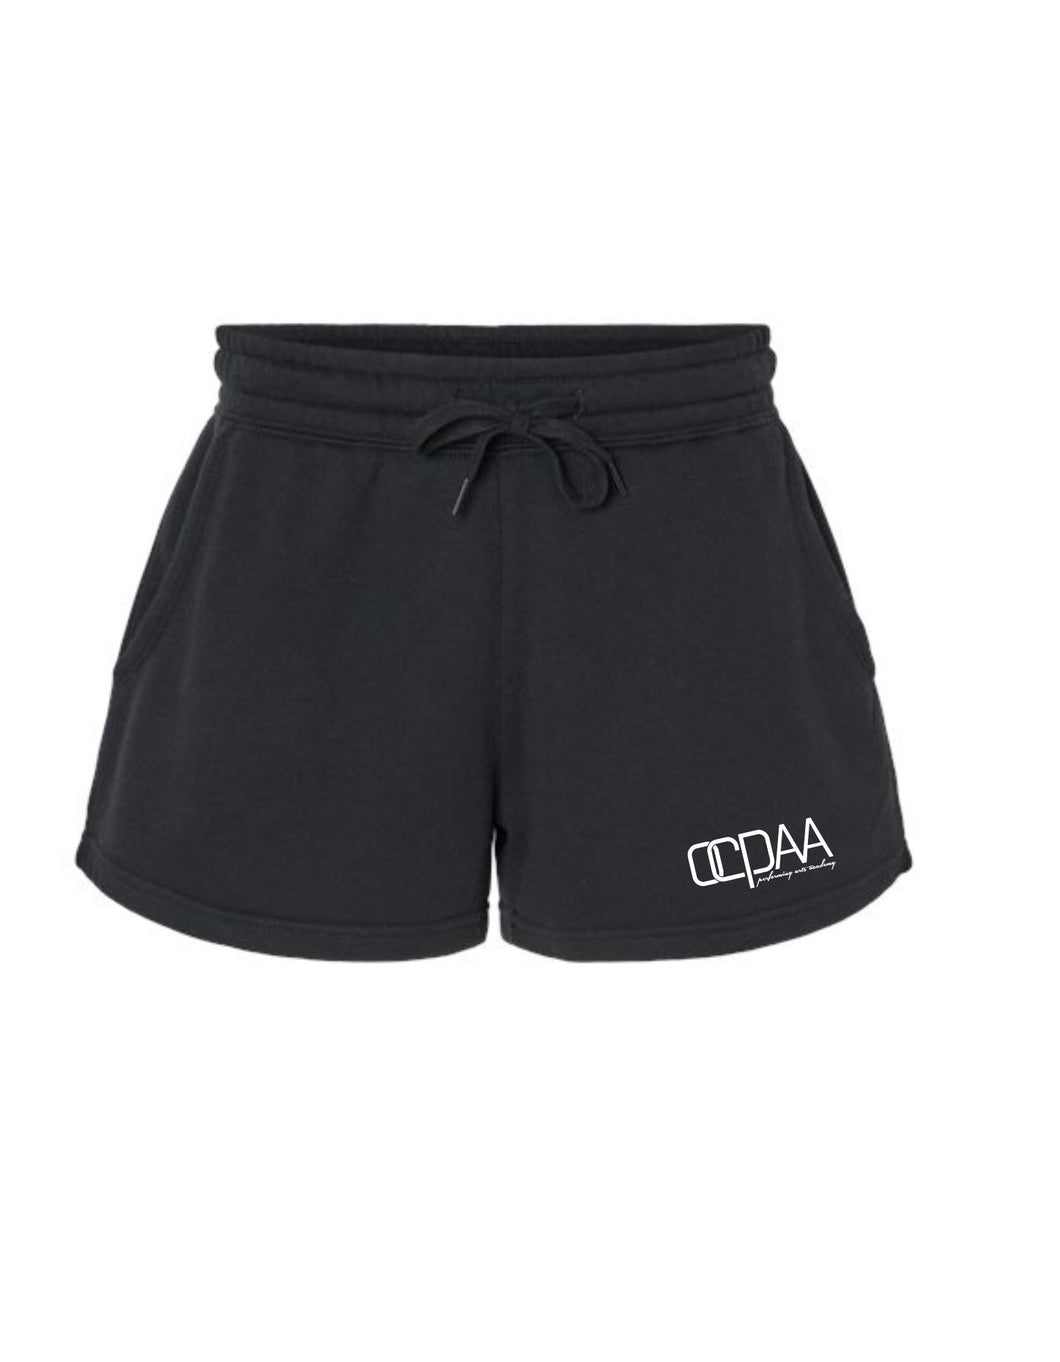 OCPAA Shorts